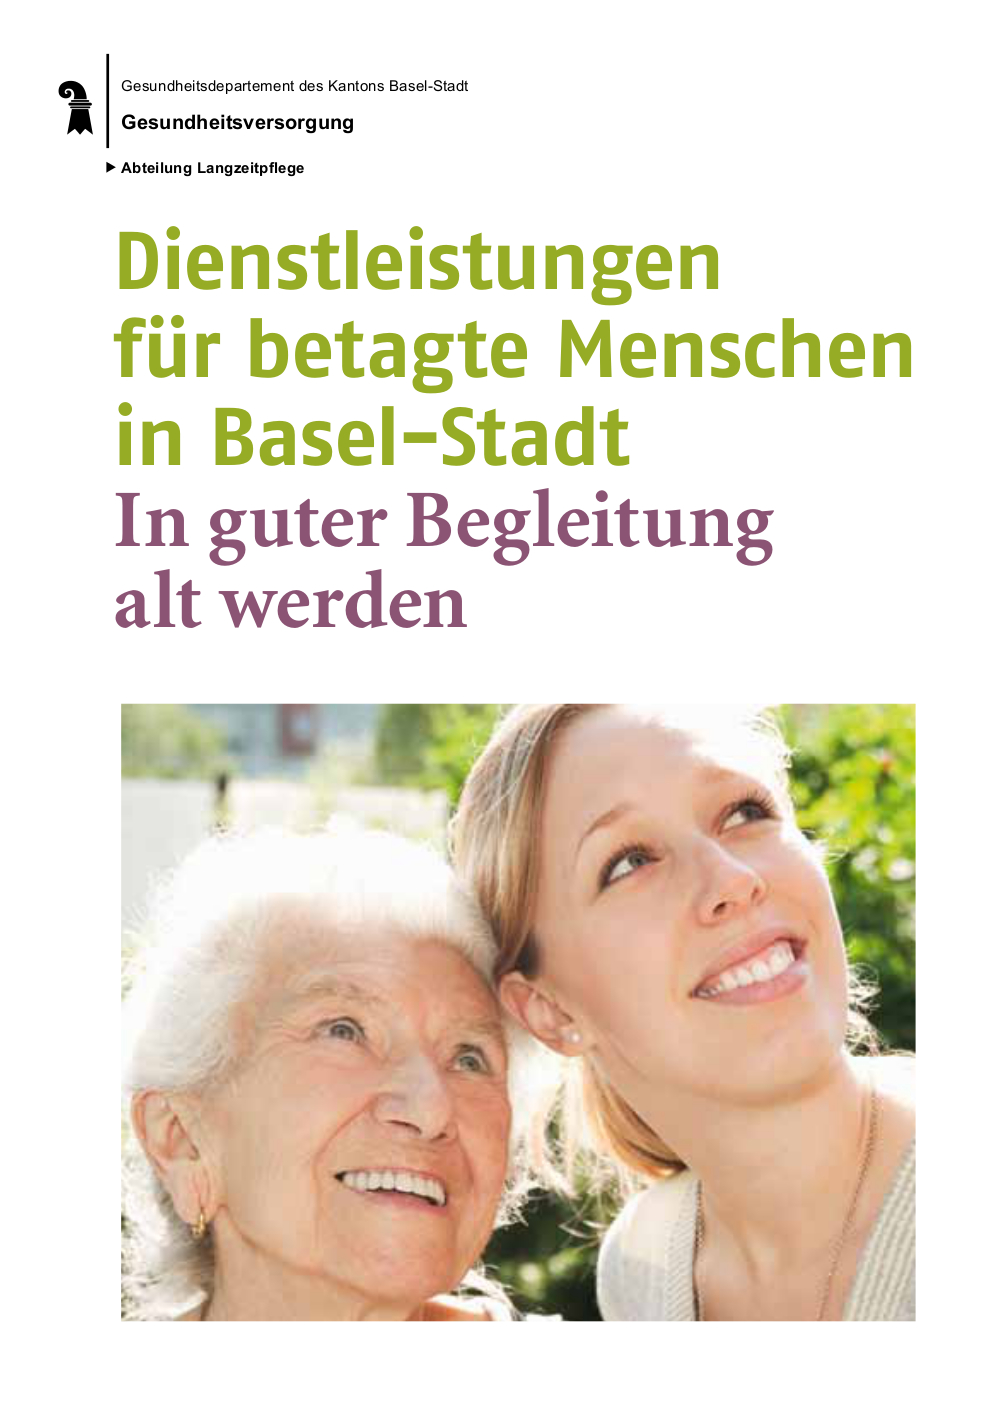 Titelbild der Broschüre "Dienstleistungen für betagte Menschen in Basel-Stadt. In guter Begleitung alt werden." Auf dem Titelfoto: Eine betagte Frau und ihre Begleiterin in Portrait-Grossaufnahme schauen frohgemut in den Himmel.